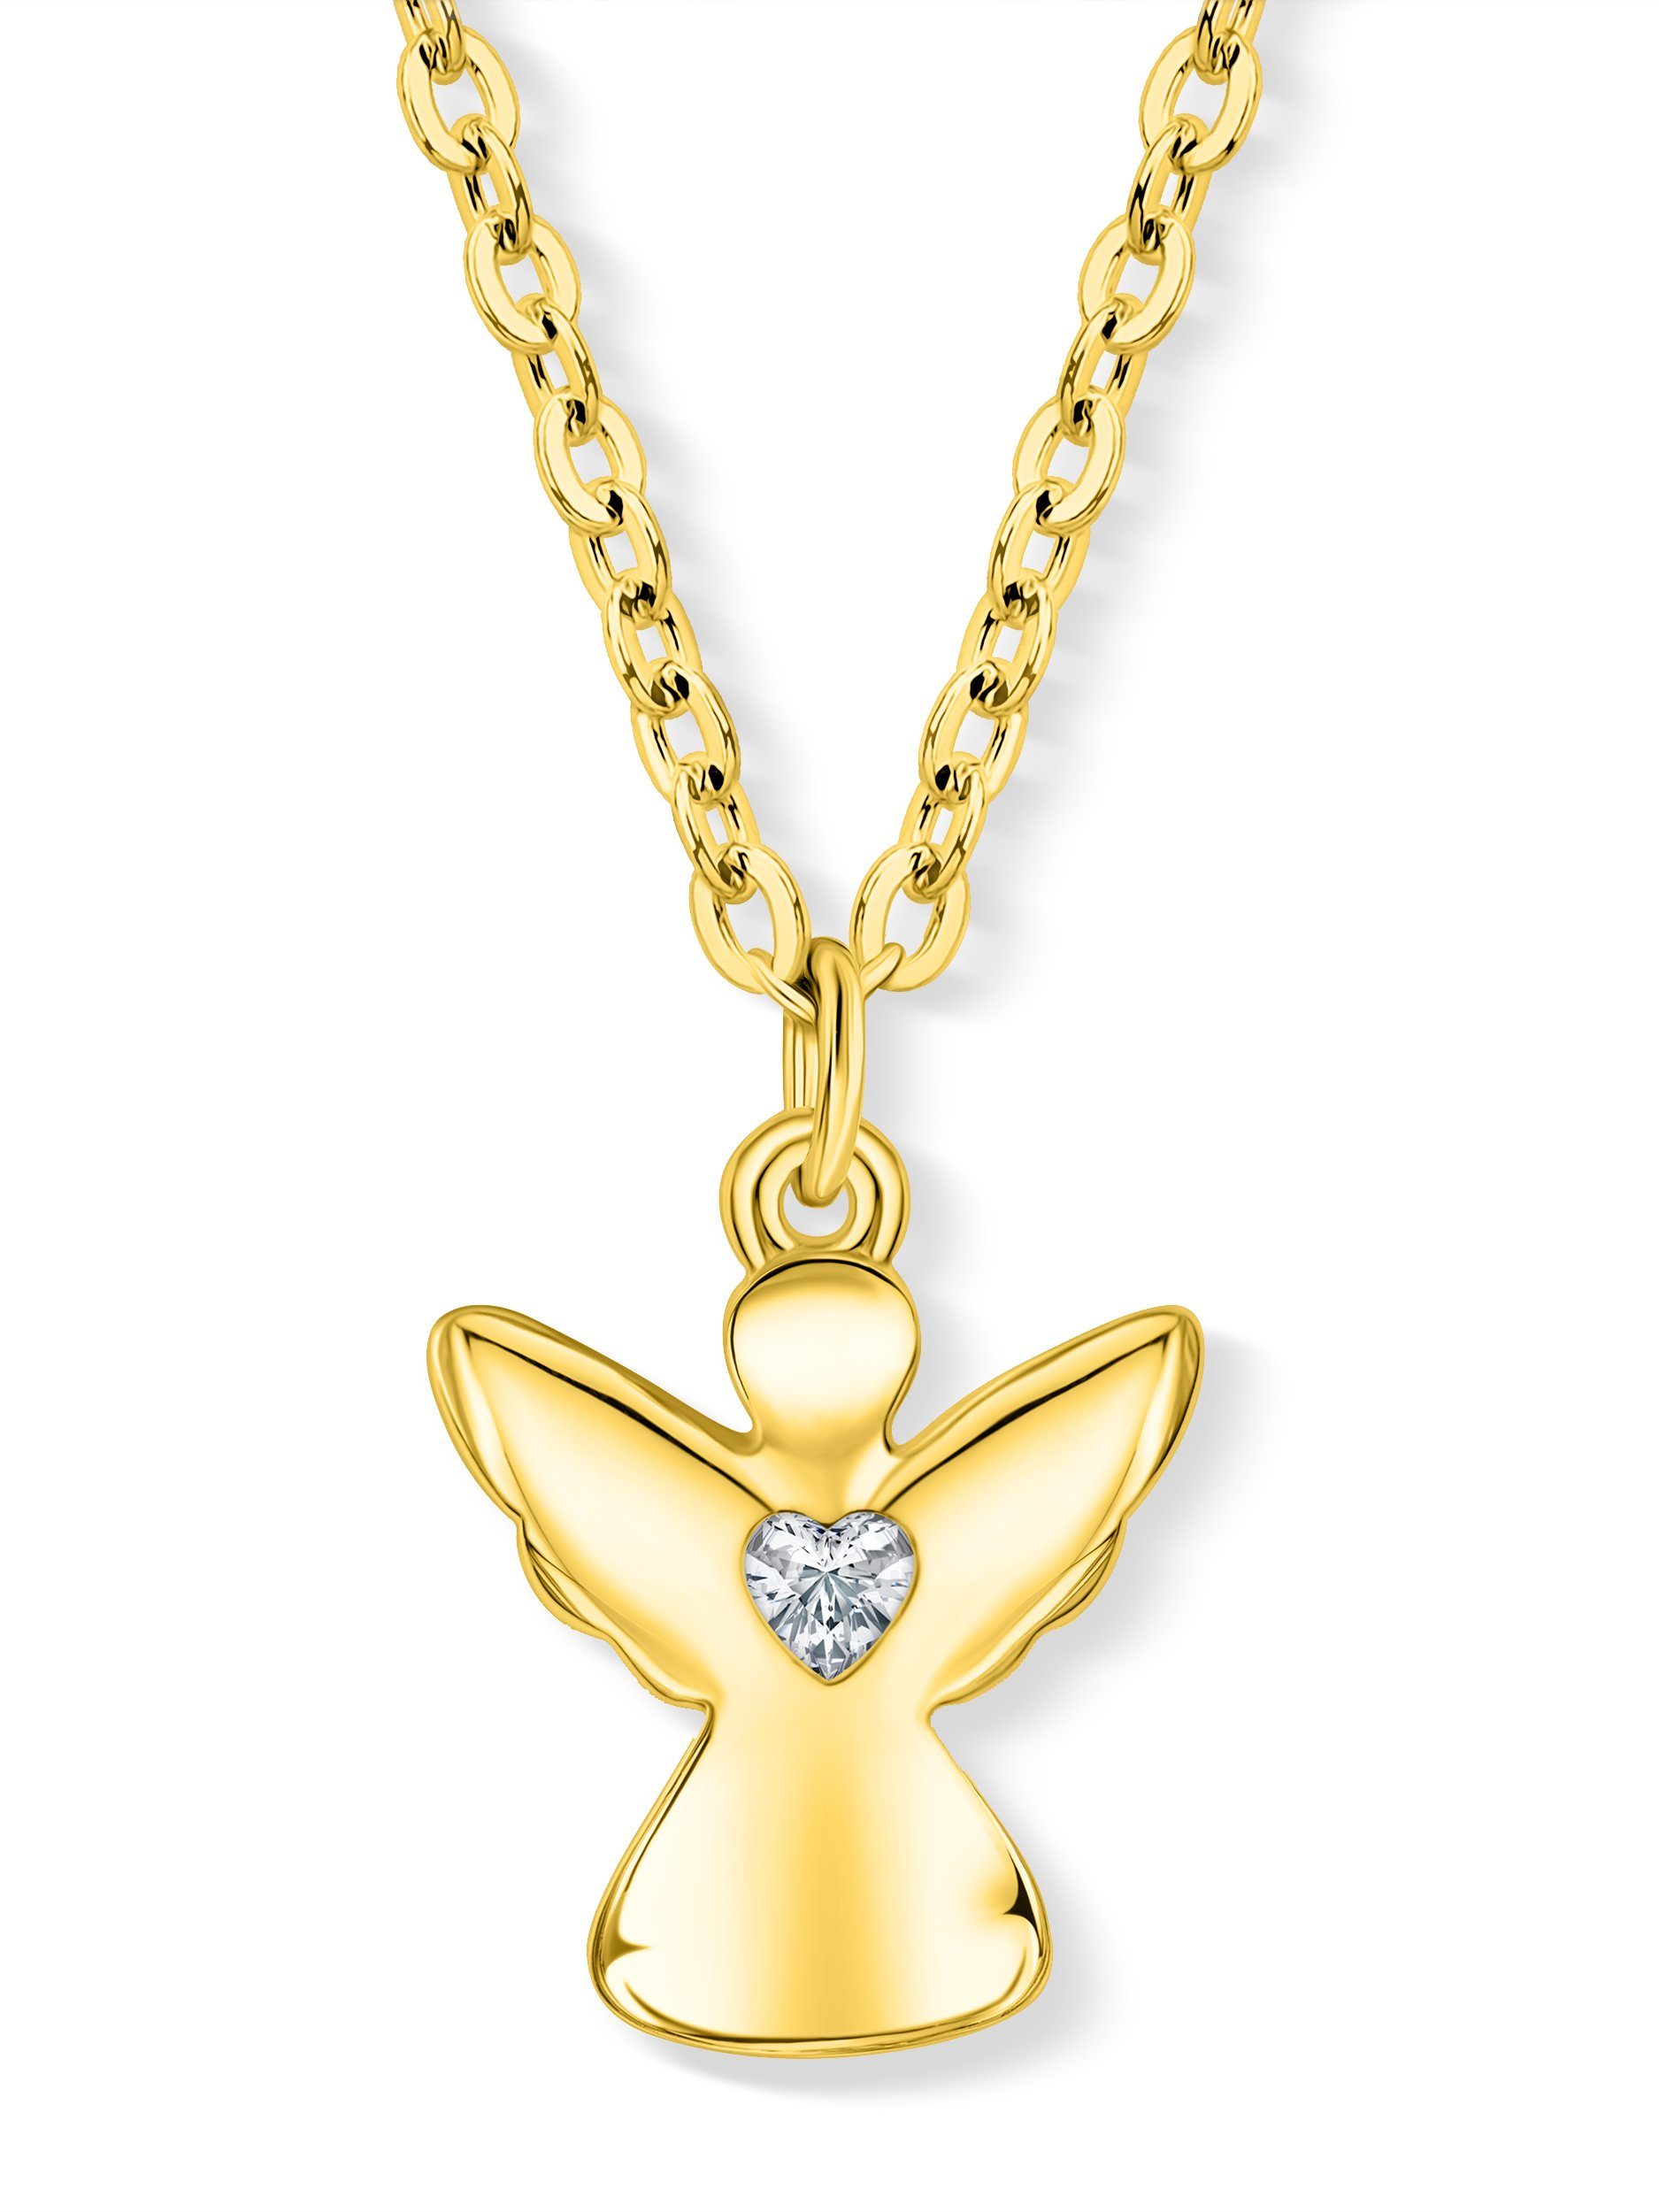 VIASOUL Kette mit Anhänger Engel Halskette mit Herz, Schutzengel Kette für Mädchen Kinder-Schmuck, stahlender Glanz Gold